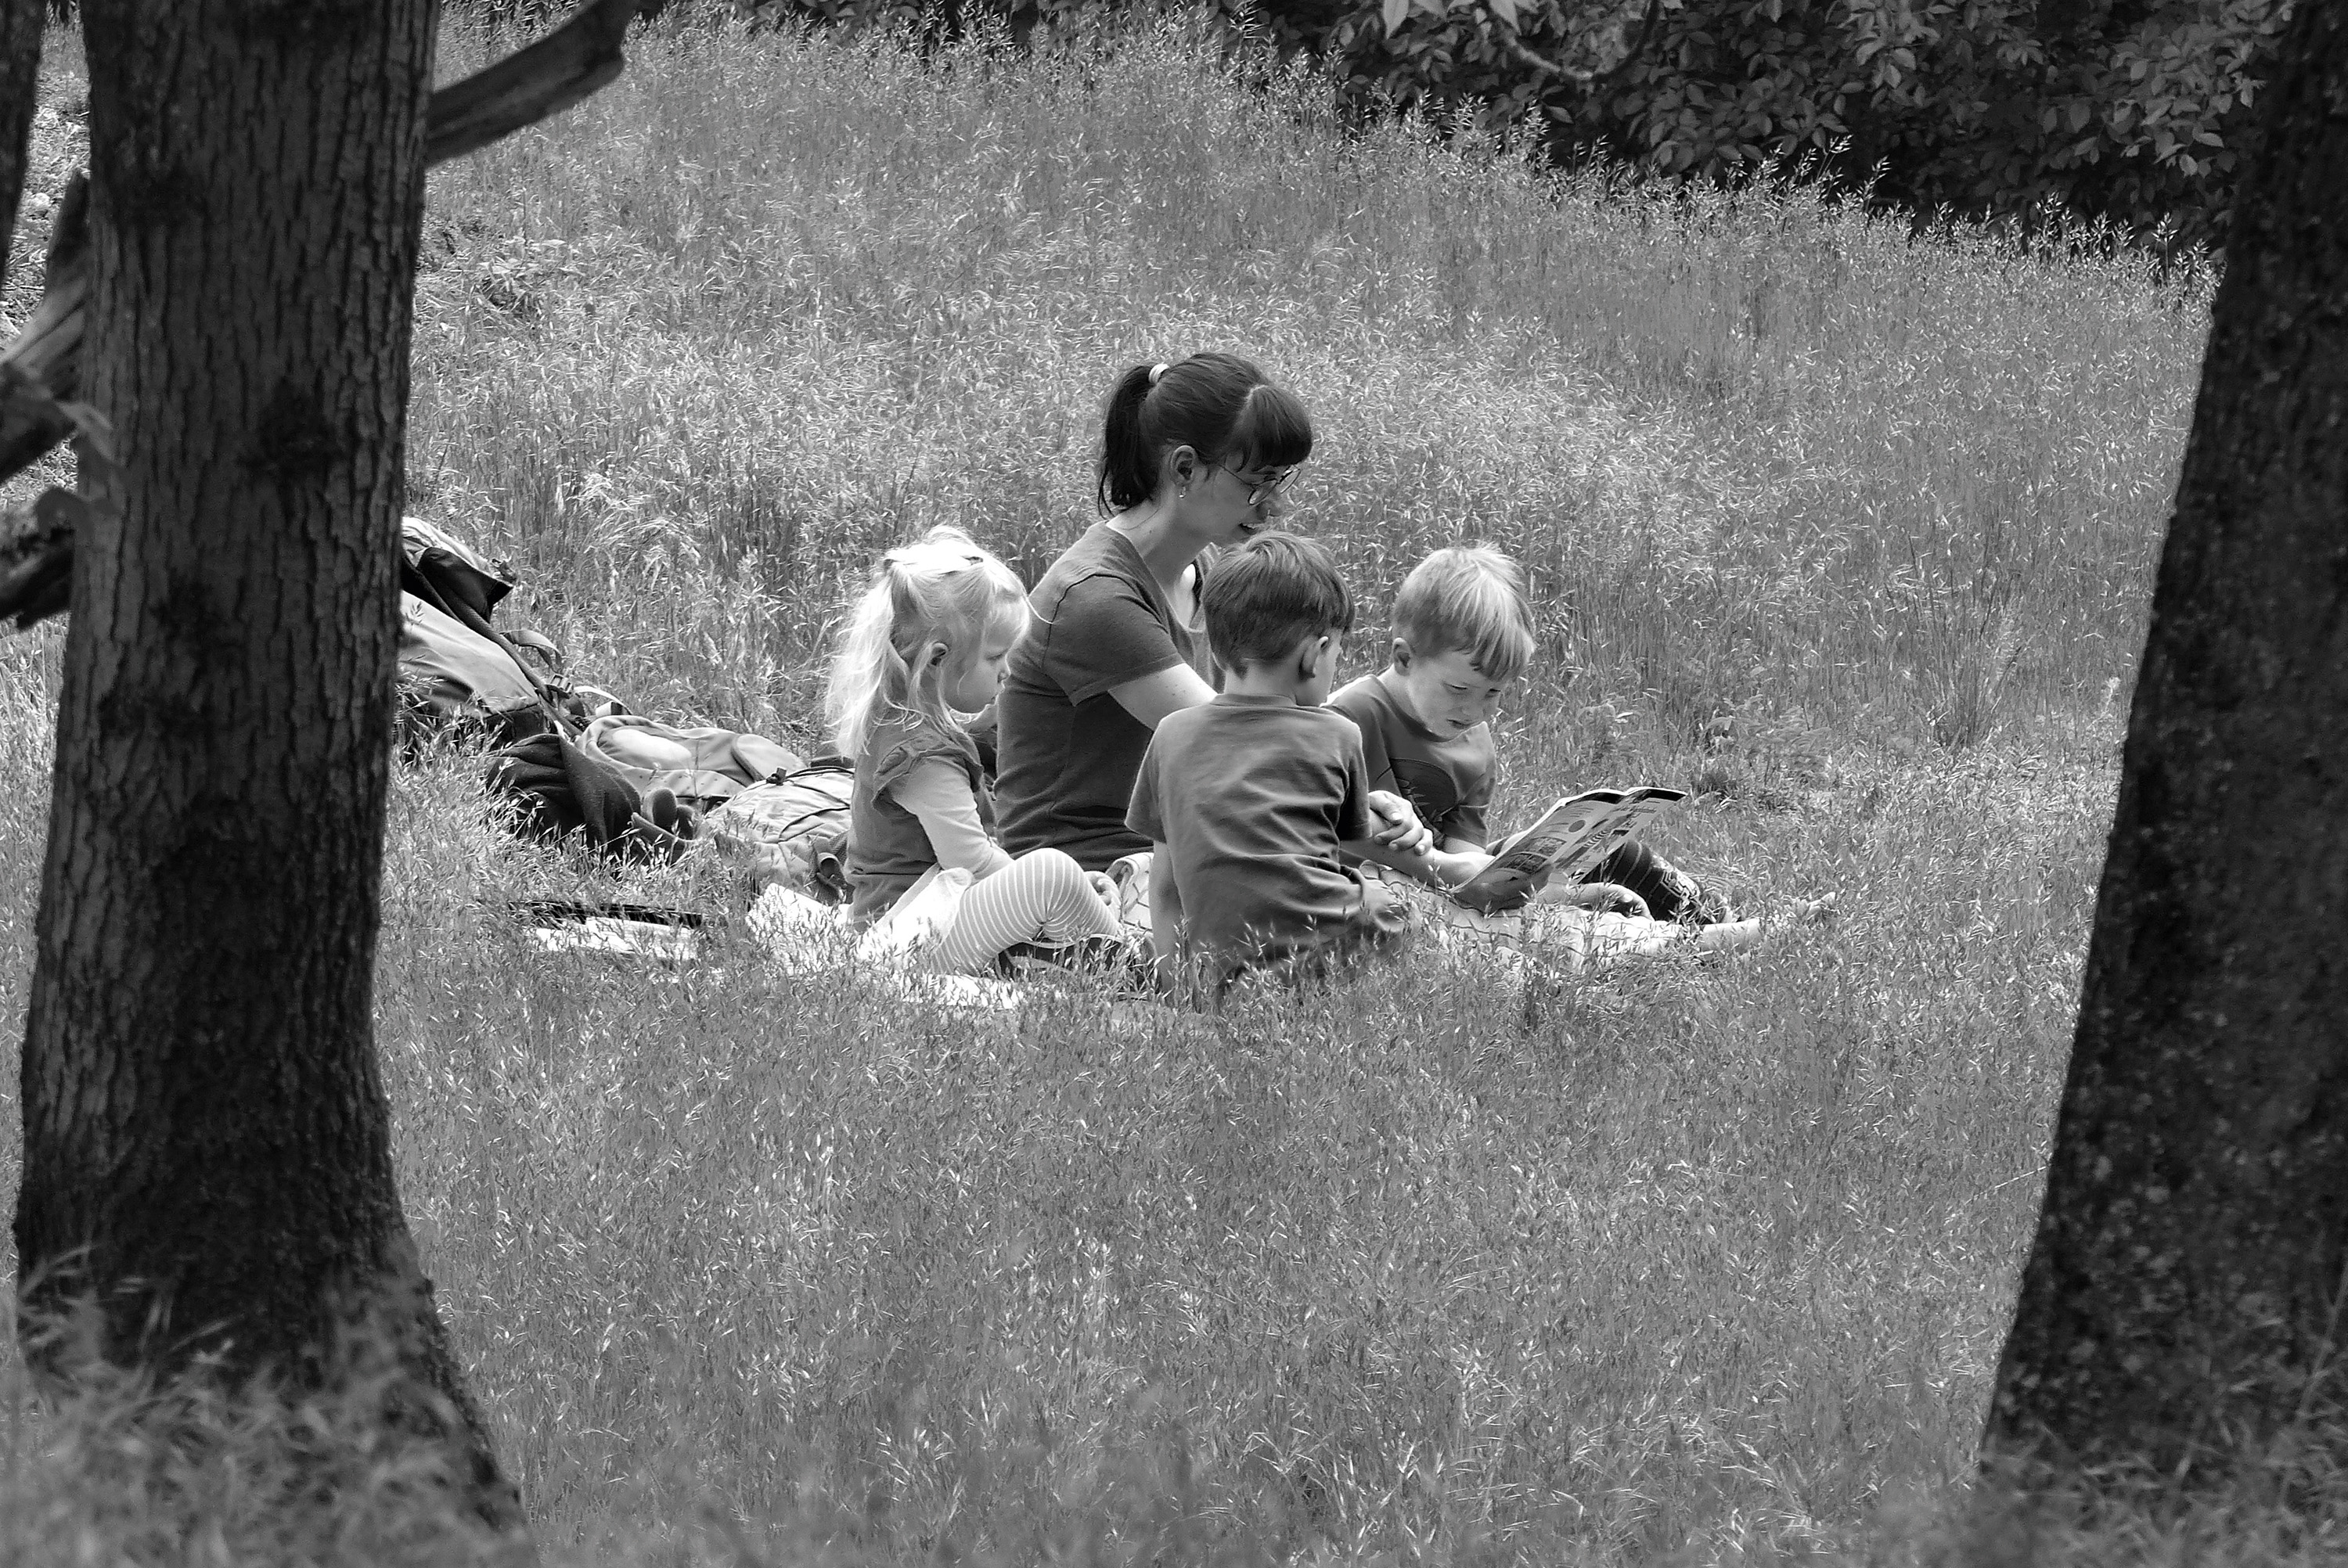 Schwarz-weiß-Aufnahme: Eine Frau sitzt mit drei Kindern auf einer Wiese.